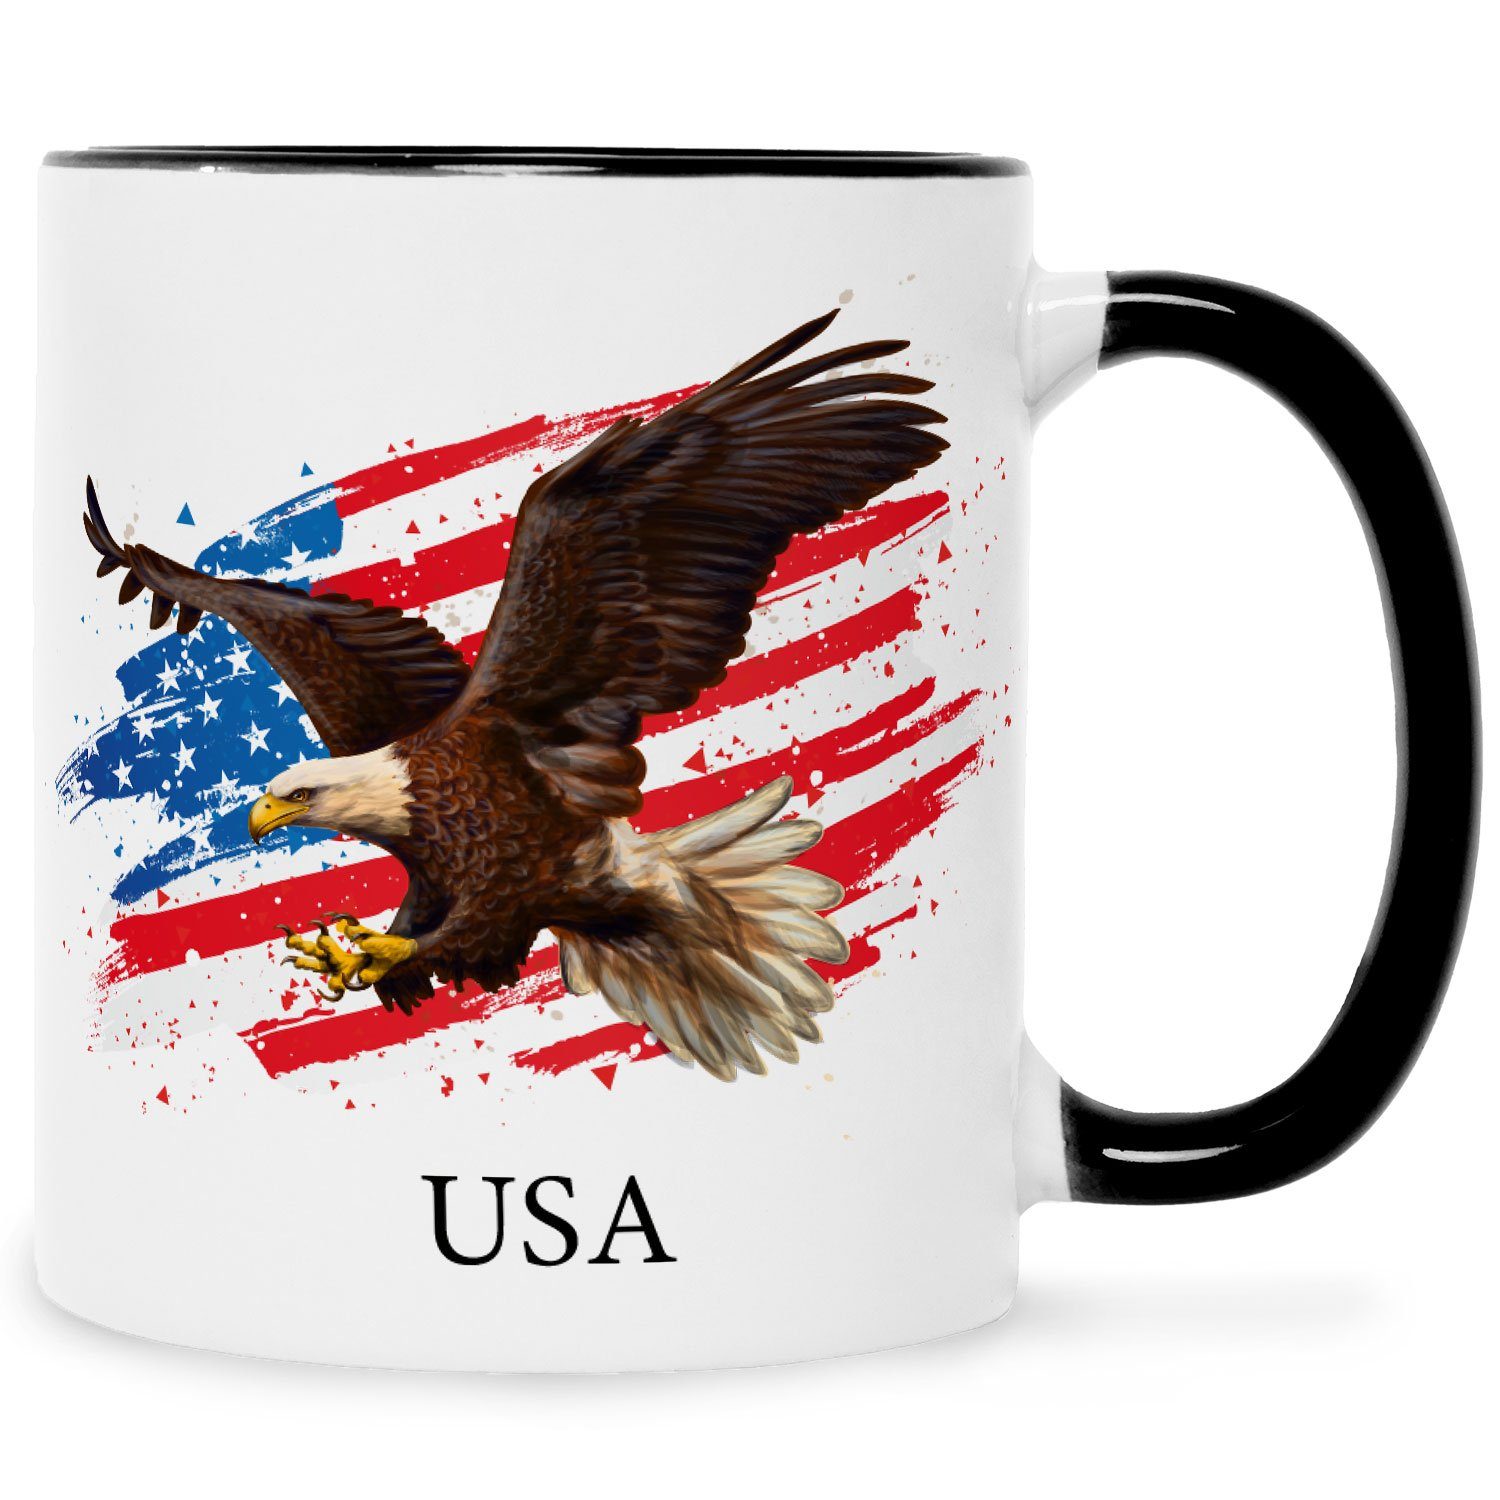 GRAVURZEILE Tasse Bedruckt mit Motiv - USA - Für Amerika Fans, Keramik, Ländertasse mit Flagge & Adler - Geschenk Souvenir mit American Flag Schwarz Weiß